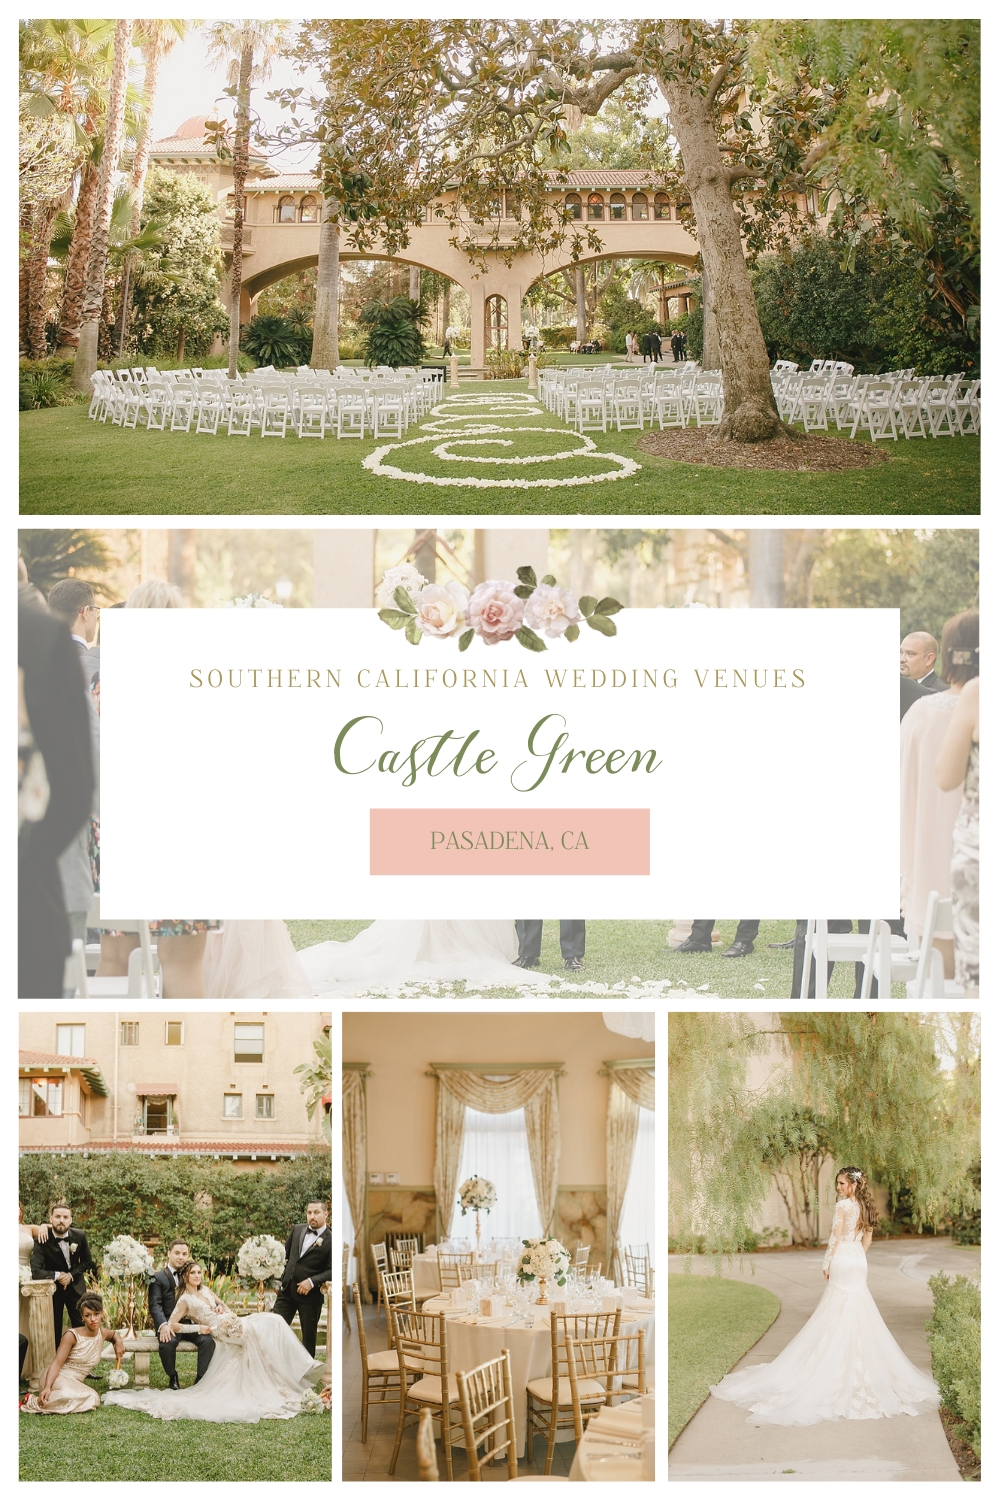 Castle Green Los Angeles wedding venue